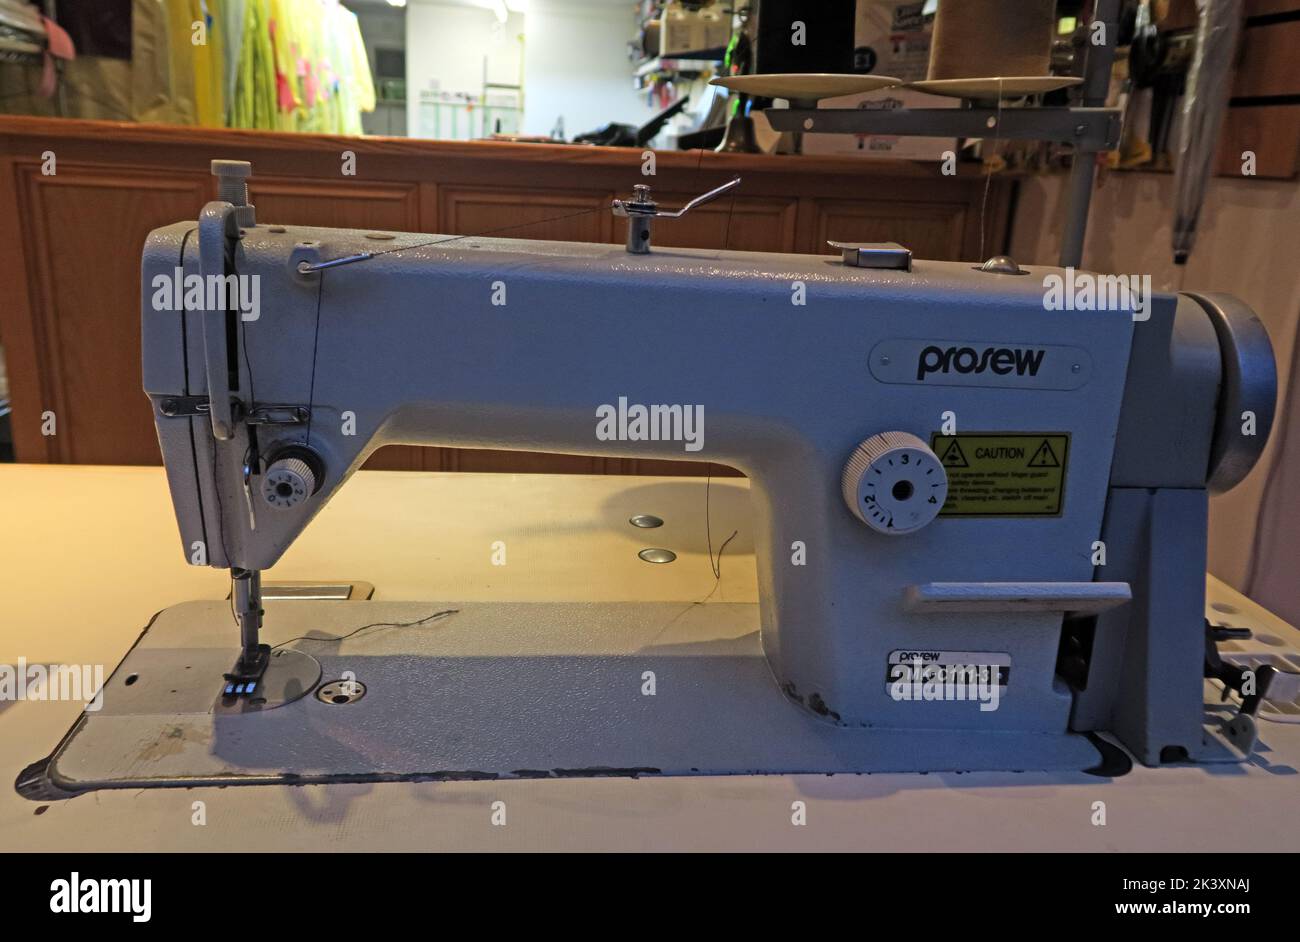 Prosew C111-3 machine à coudre industrielle (AP0280) dans un atelier de transformation vide Banque D'Images